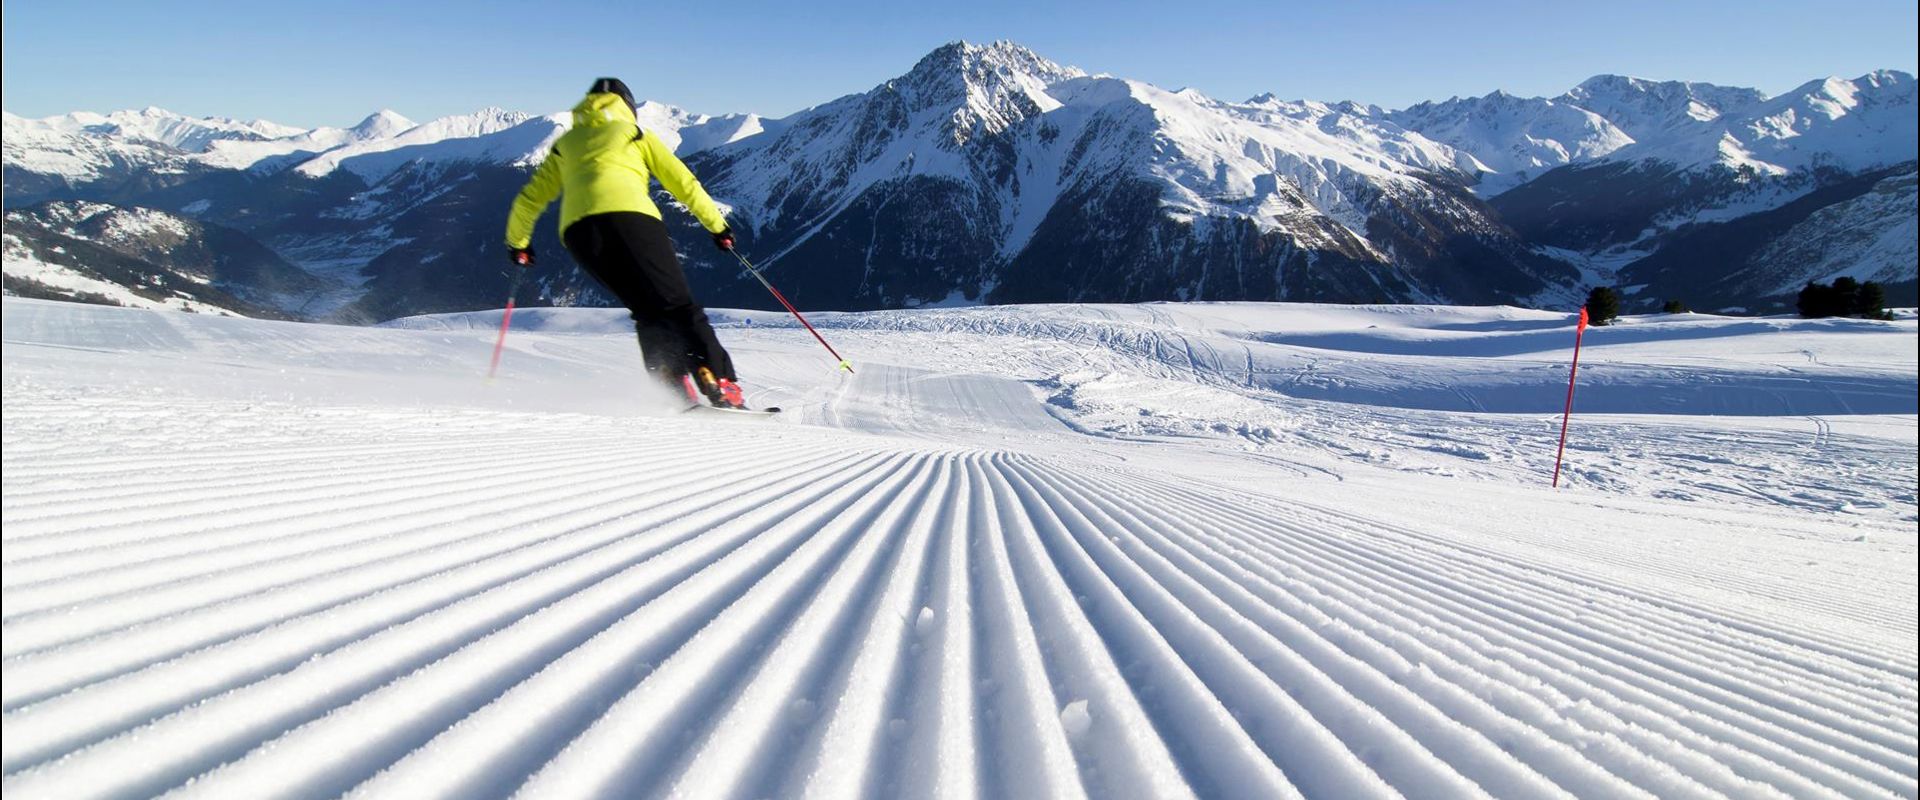 klausen-winter-skifahren-alex-filz